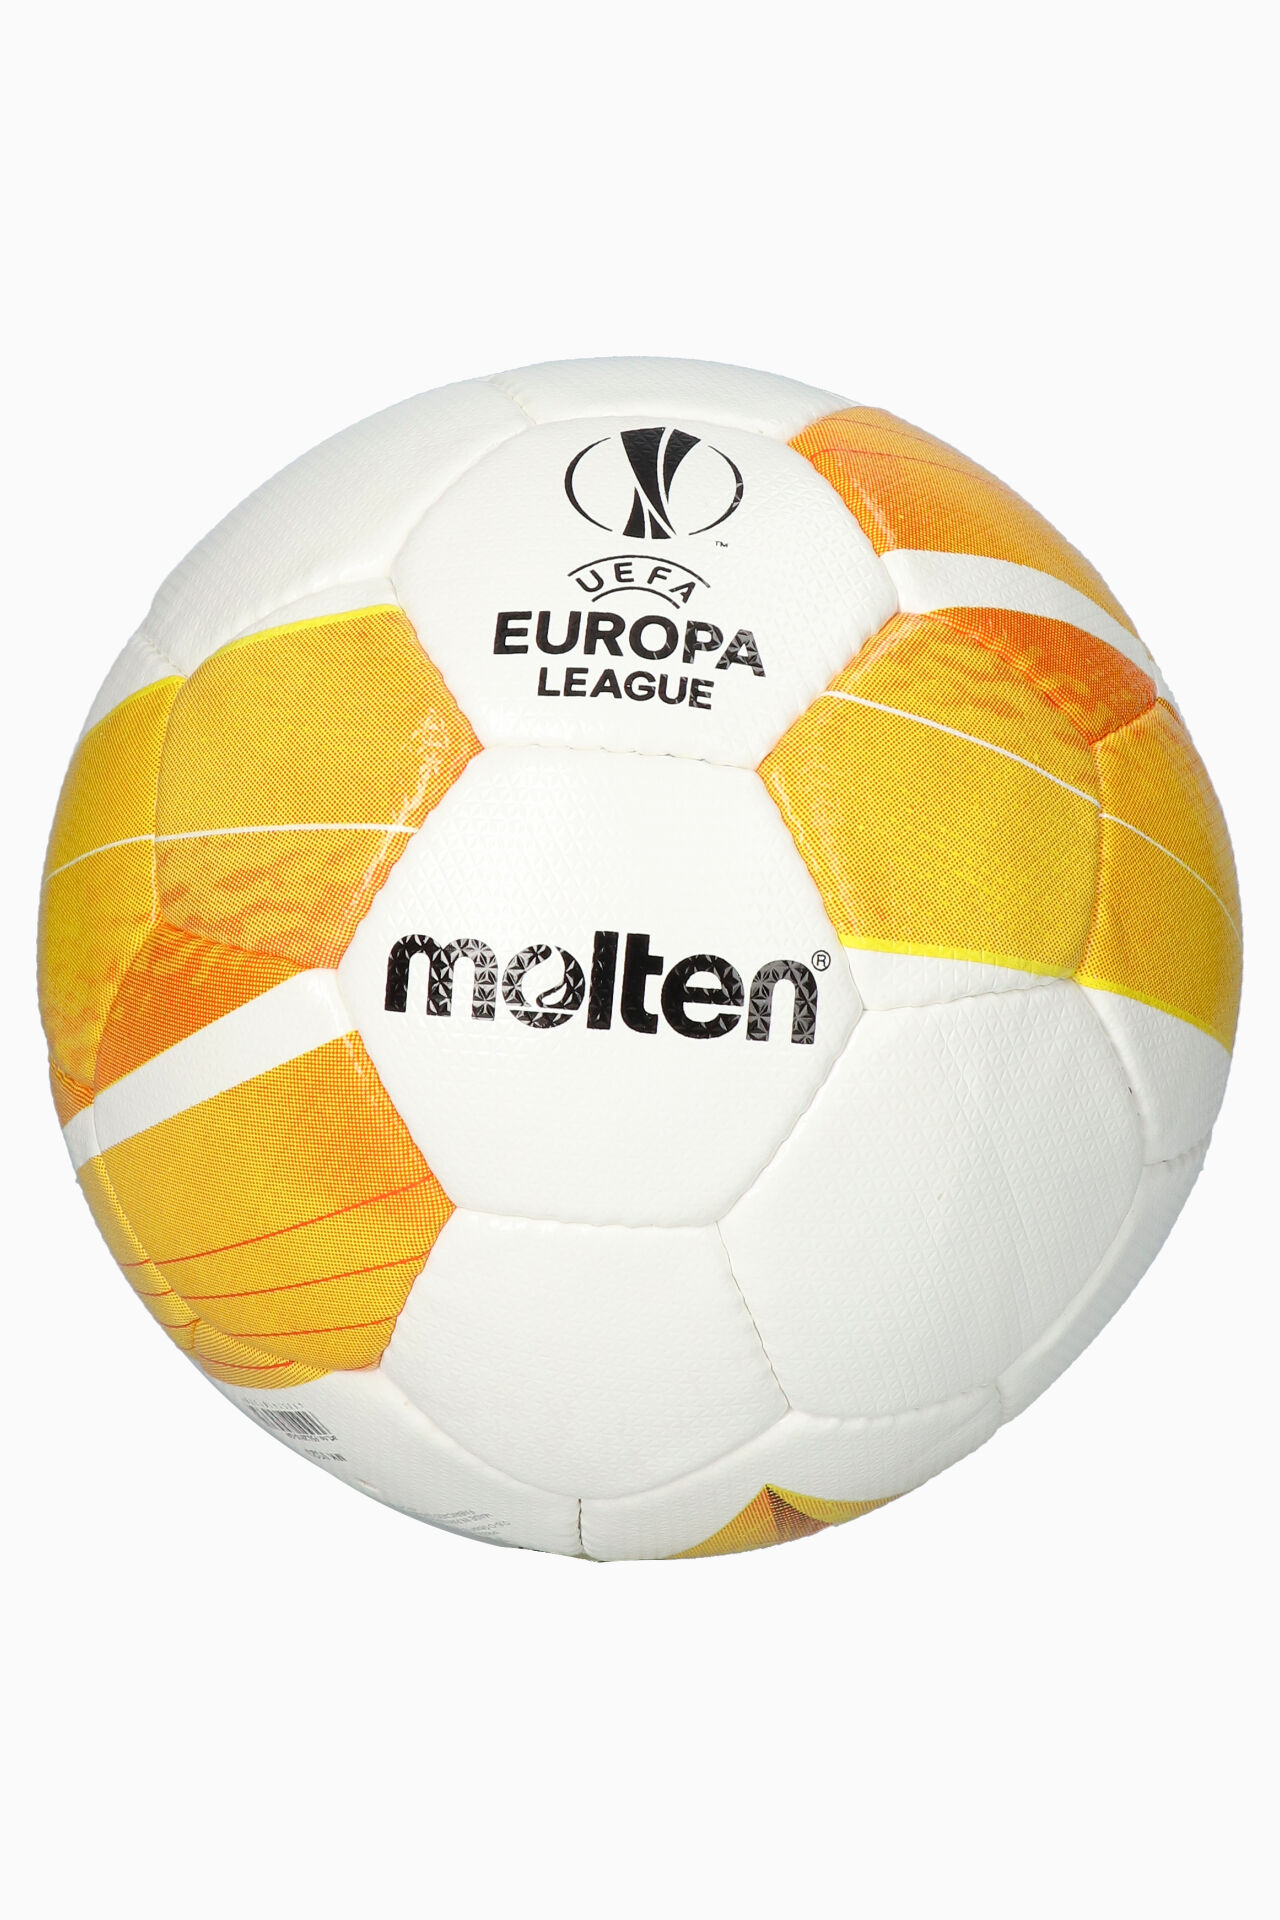 molten soccer ball europa league